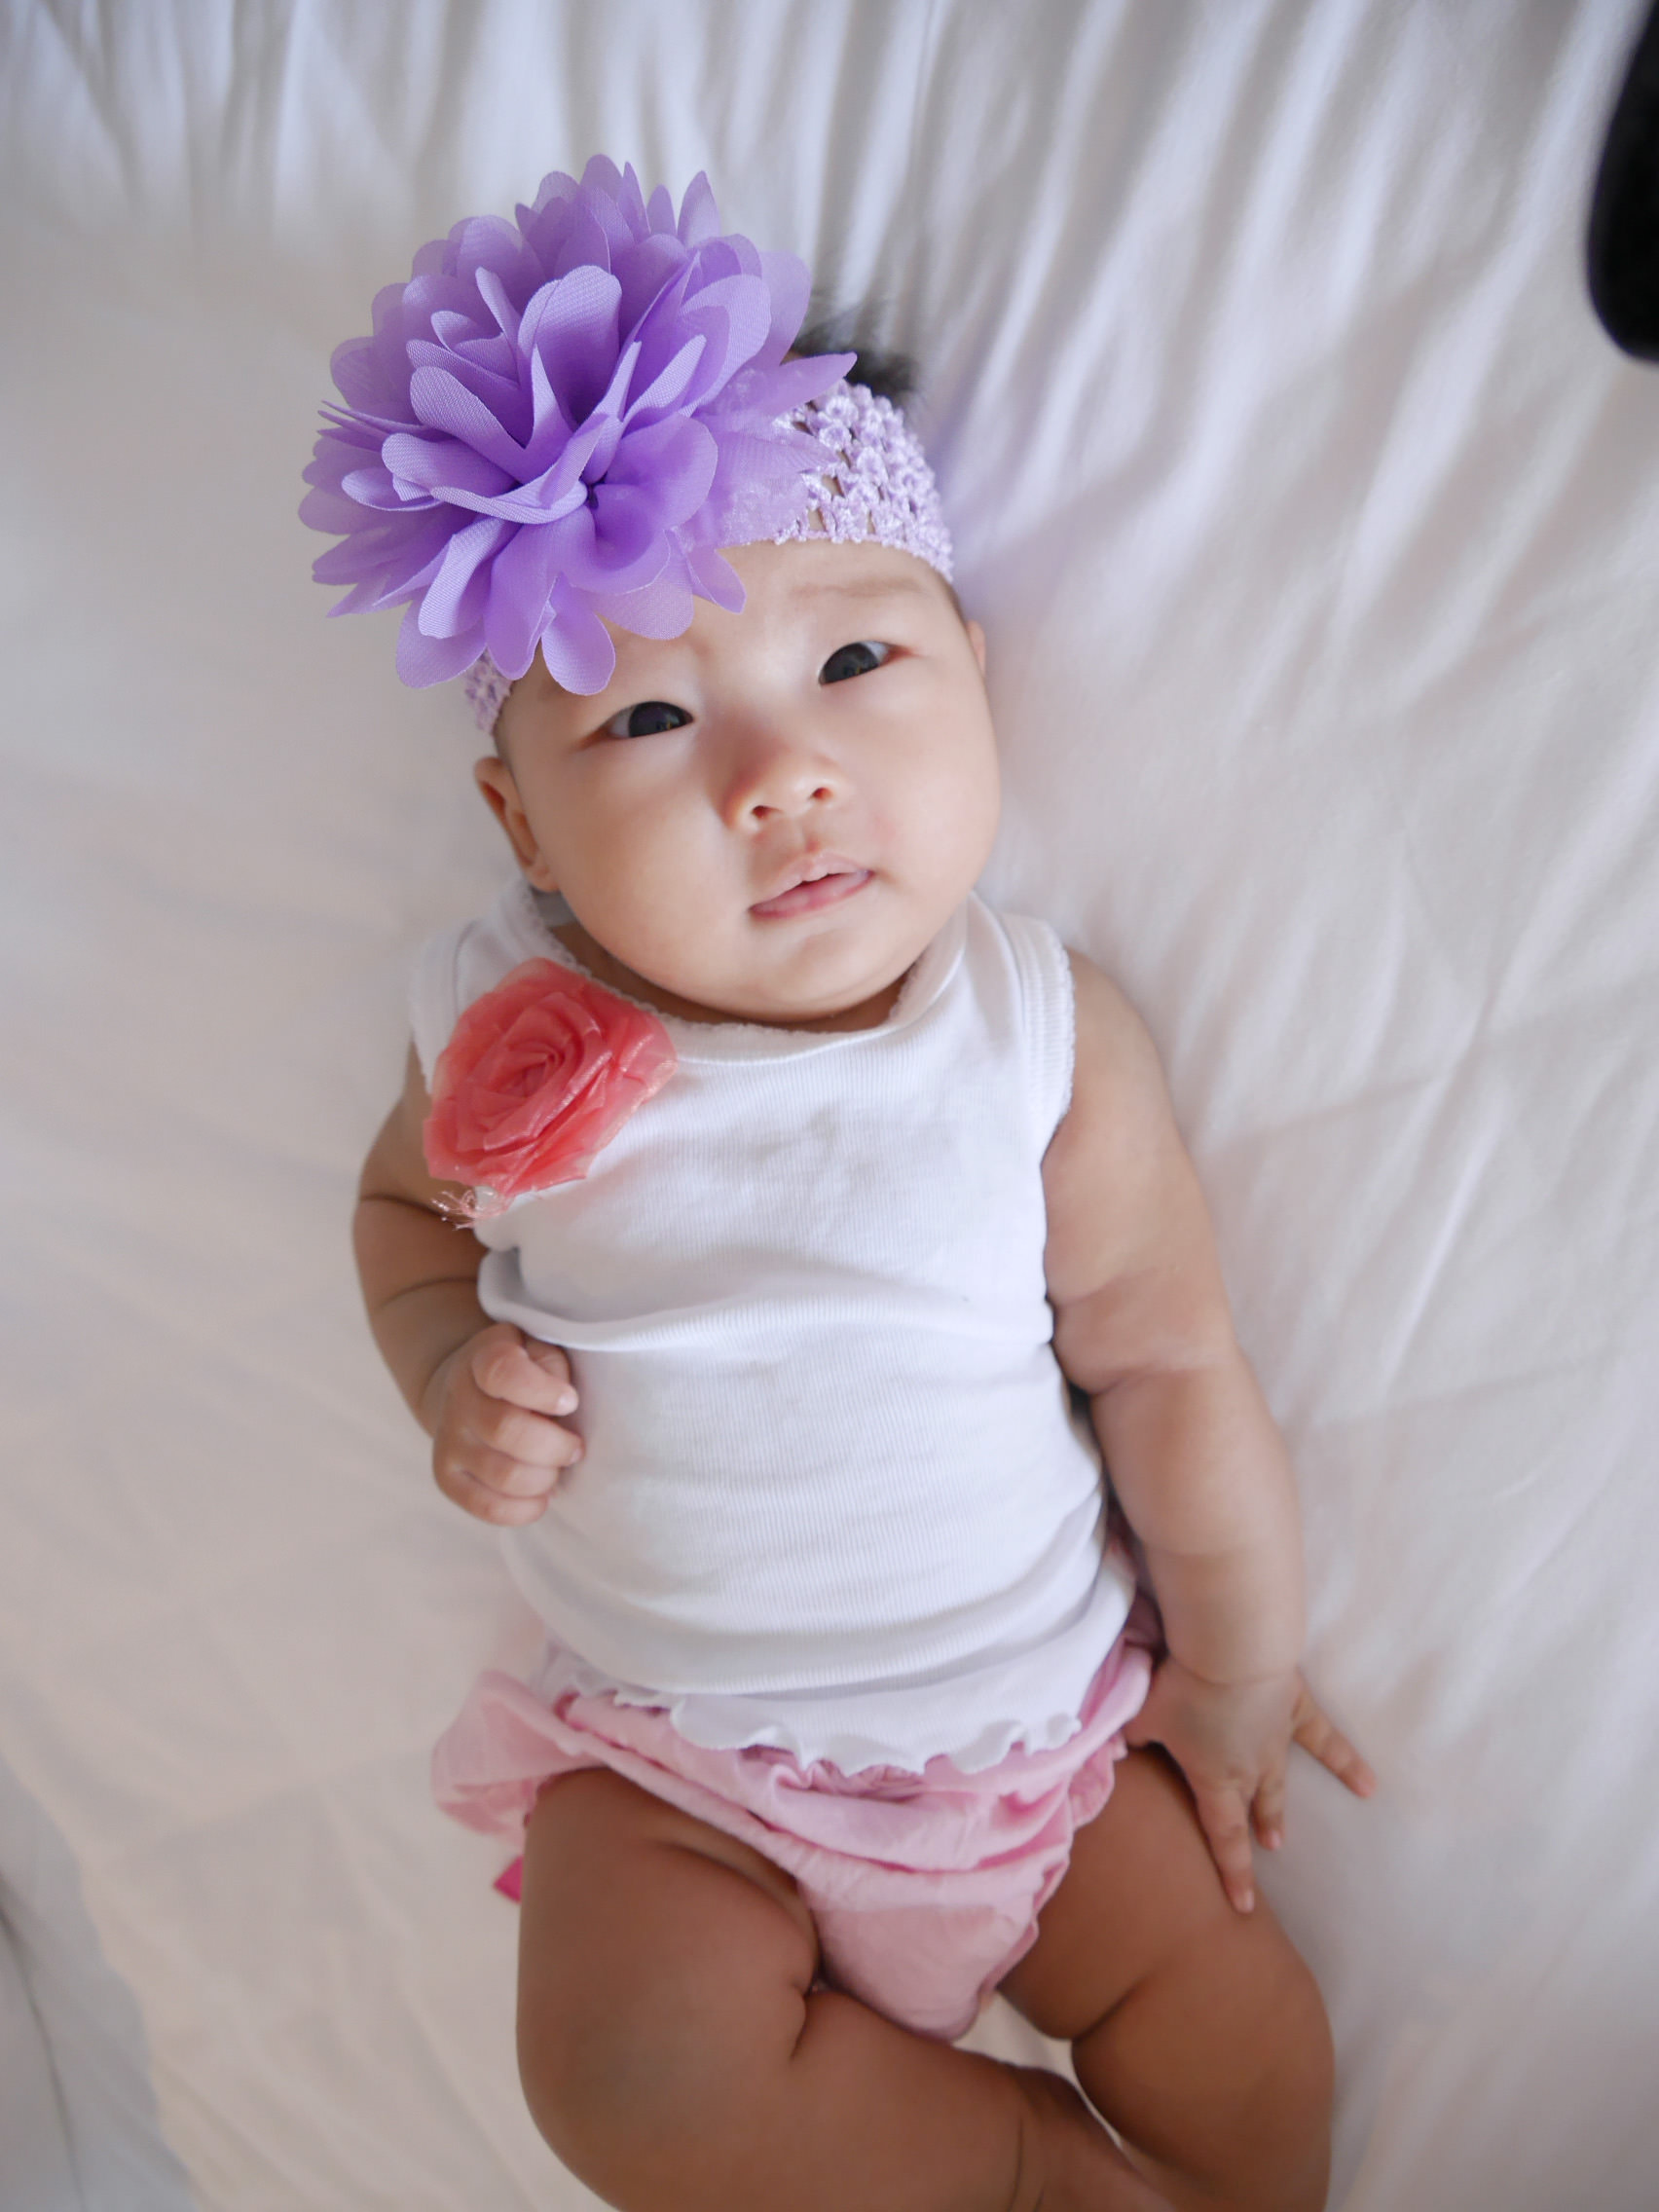 [寶寶] 日安朵朵寶寶的時尚小配件,可愛又安全的寶寶髮飾/衣服/帽子/美國Quiltex 超柔軟動物安撫毯